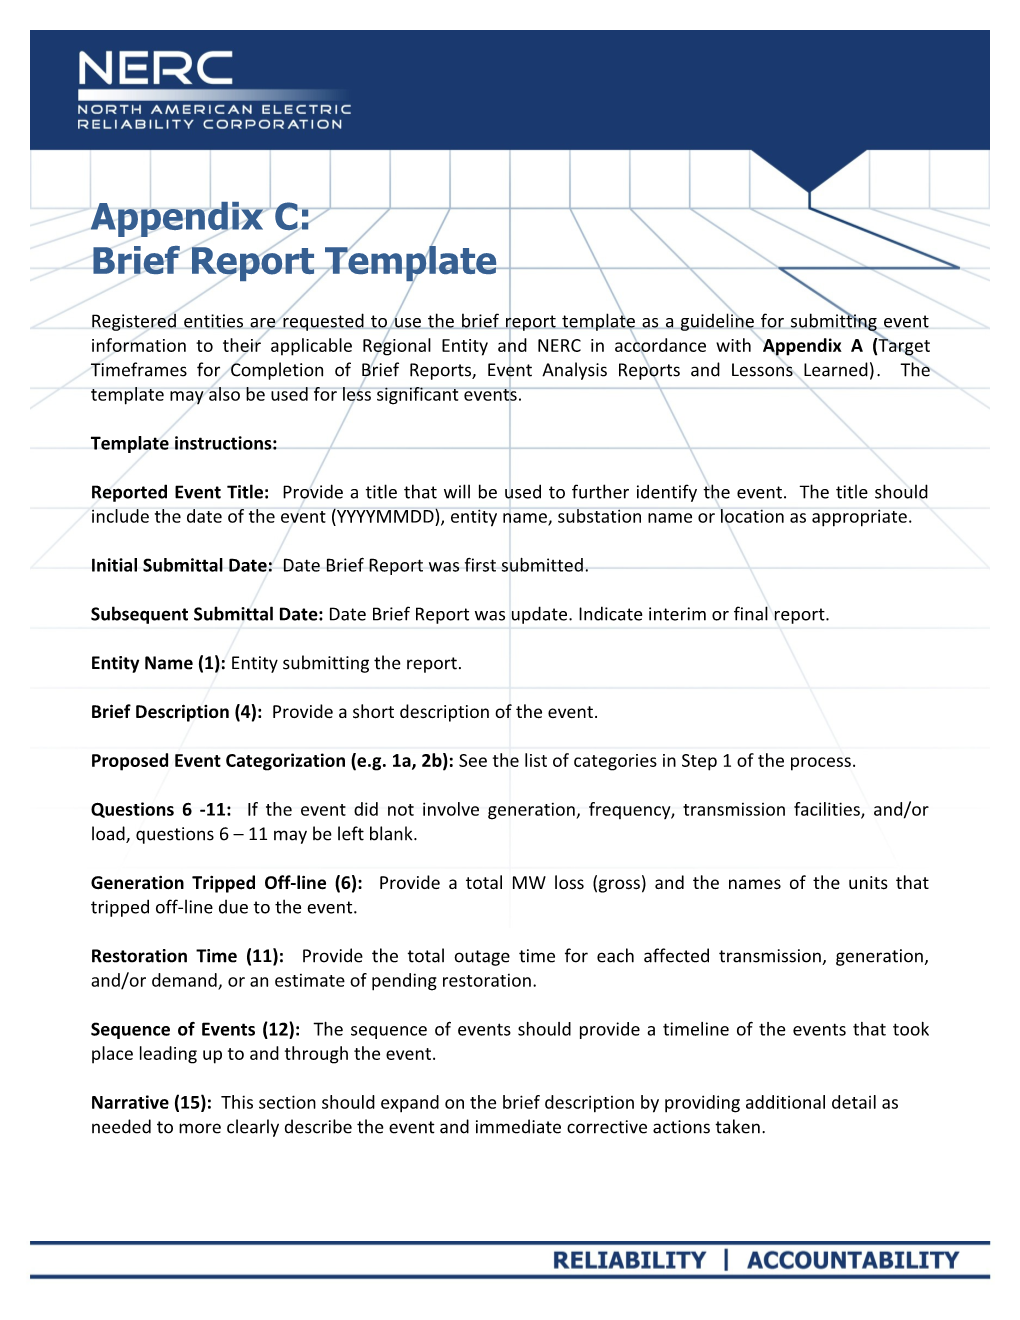 Appendix C - Brief Report Template